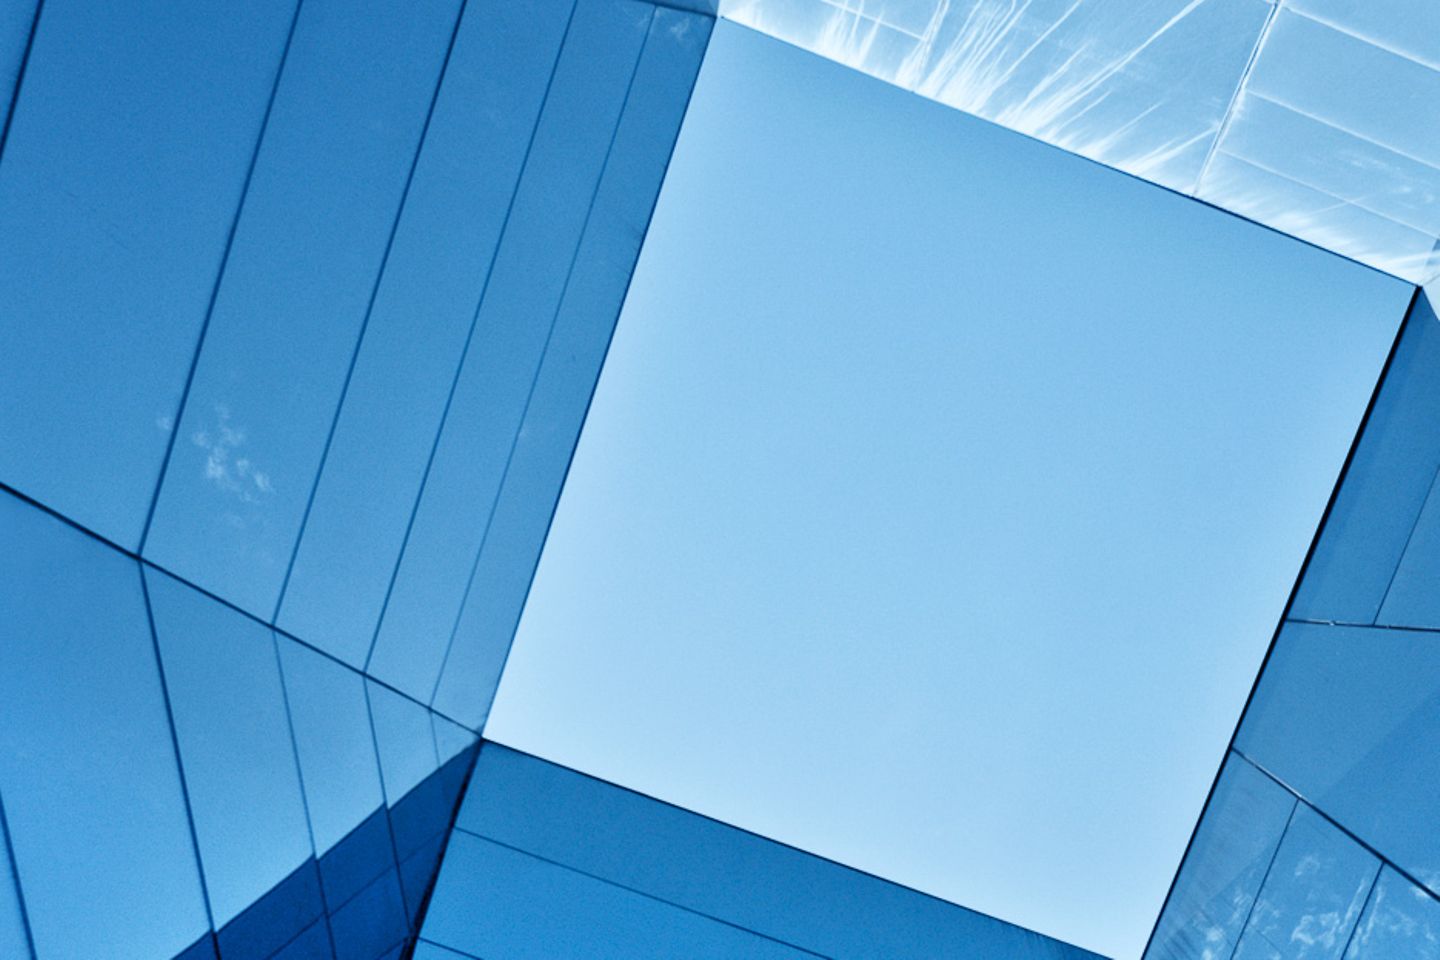 Verticale weergave van de lucht door een glazen prisma.